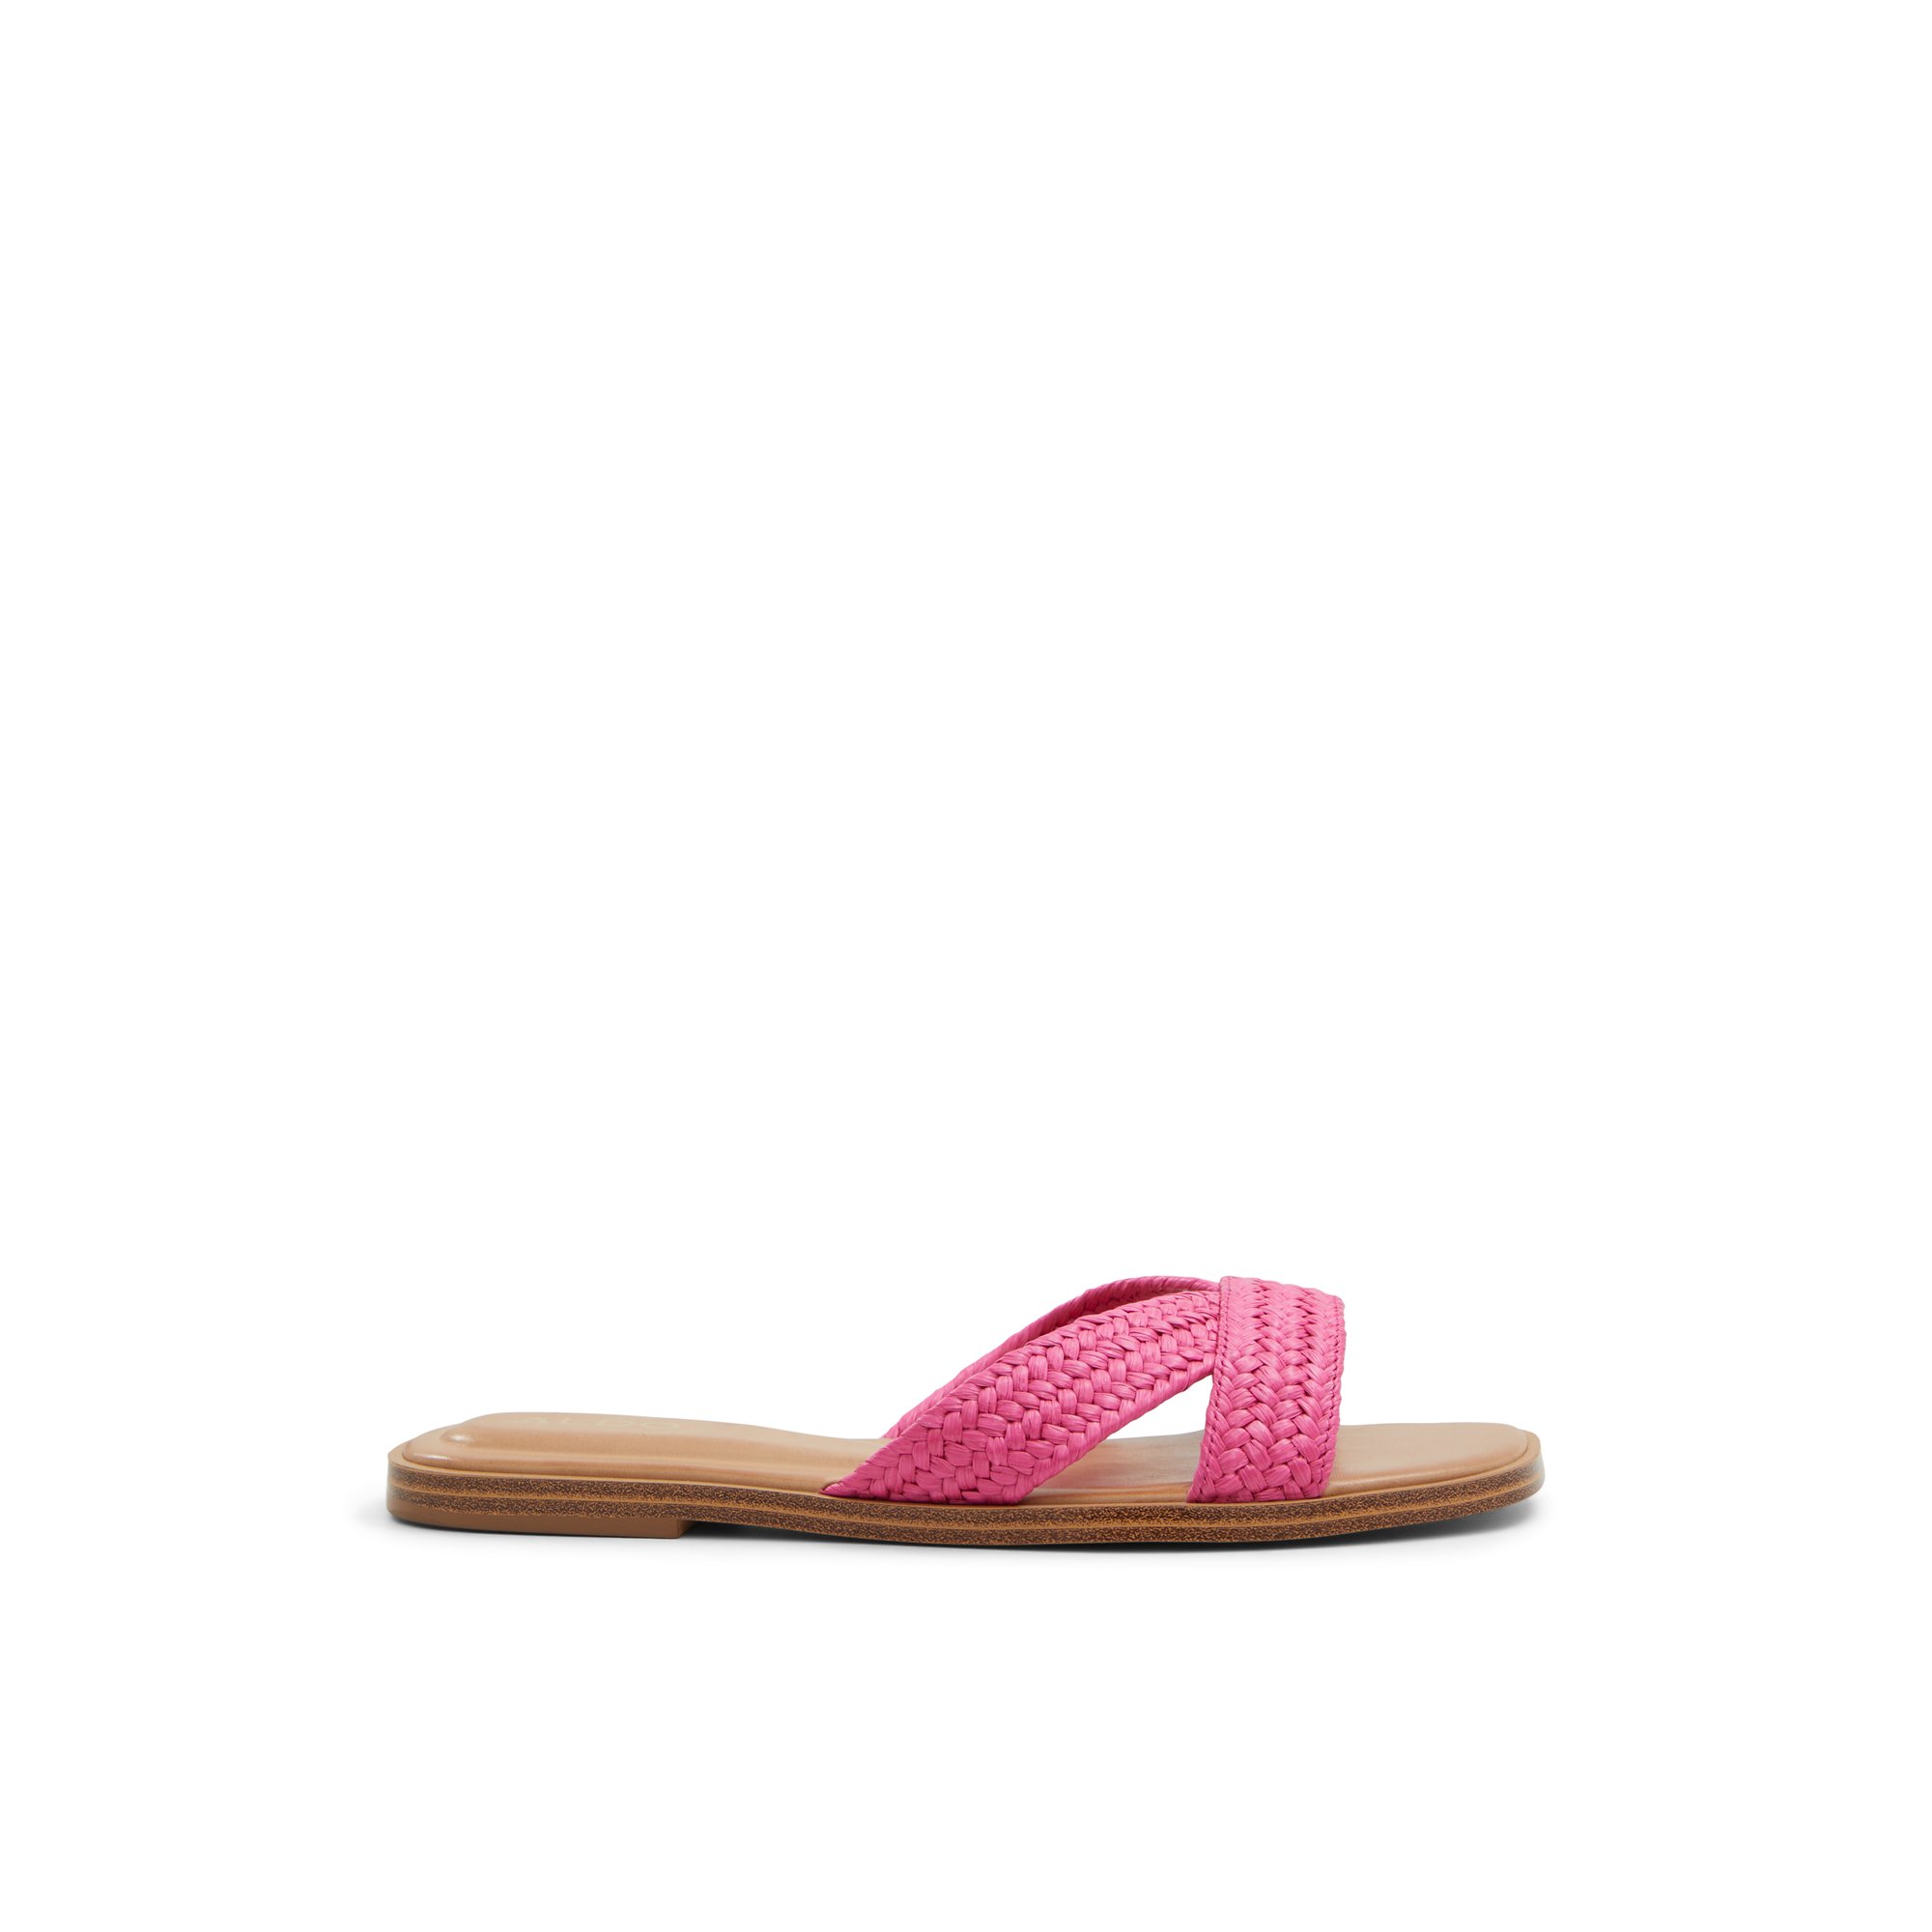 ALDO Caria - Women's Sandals Flats - Pink